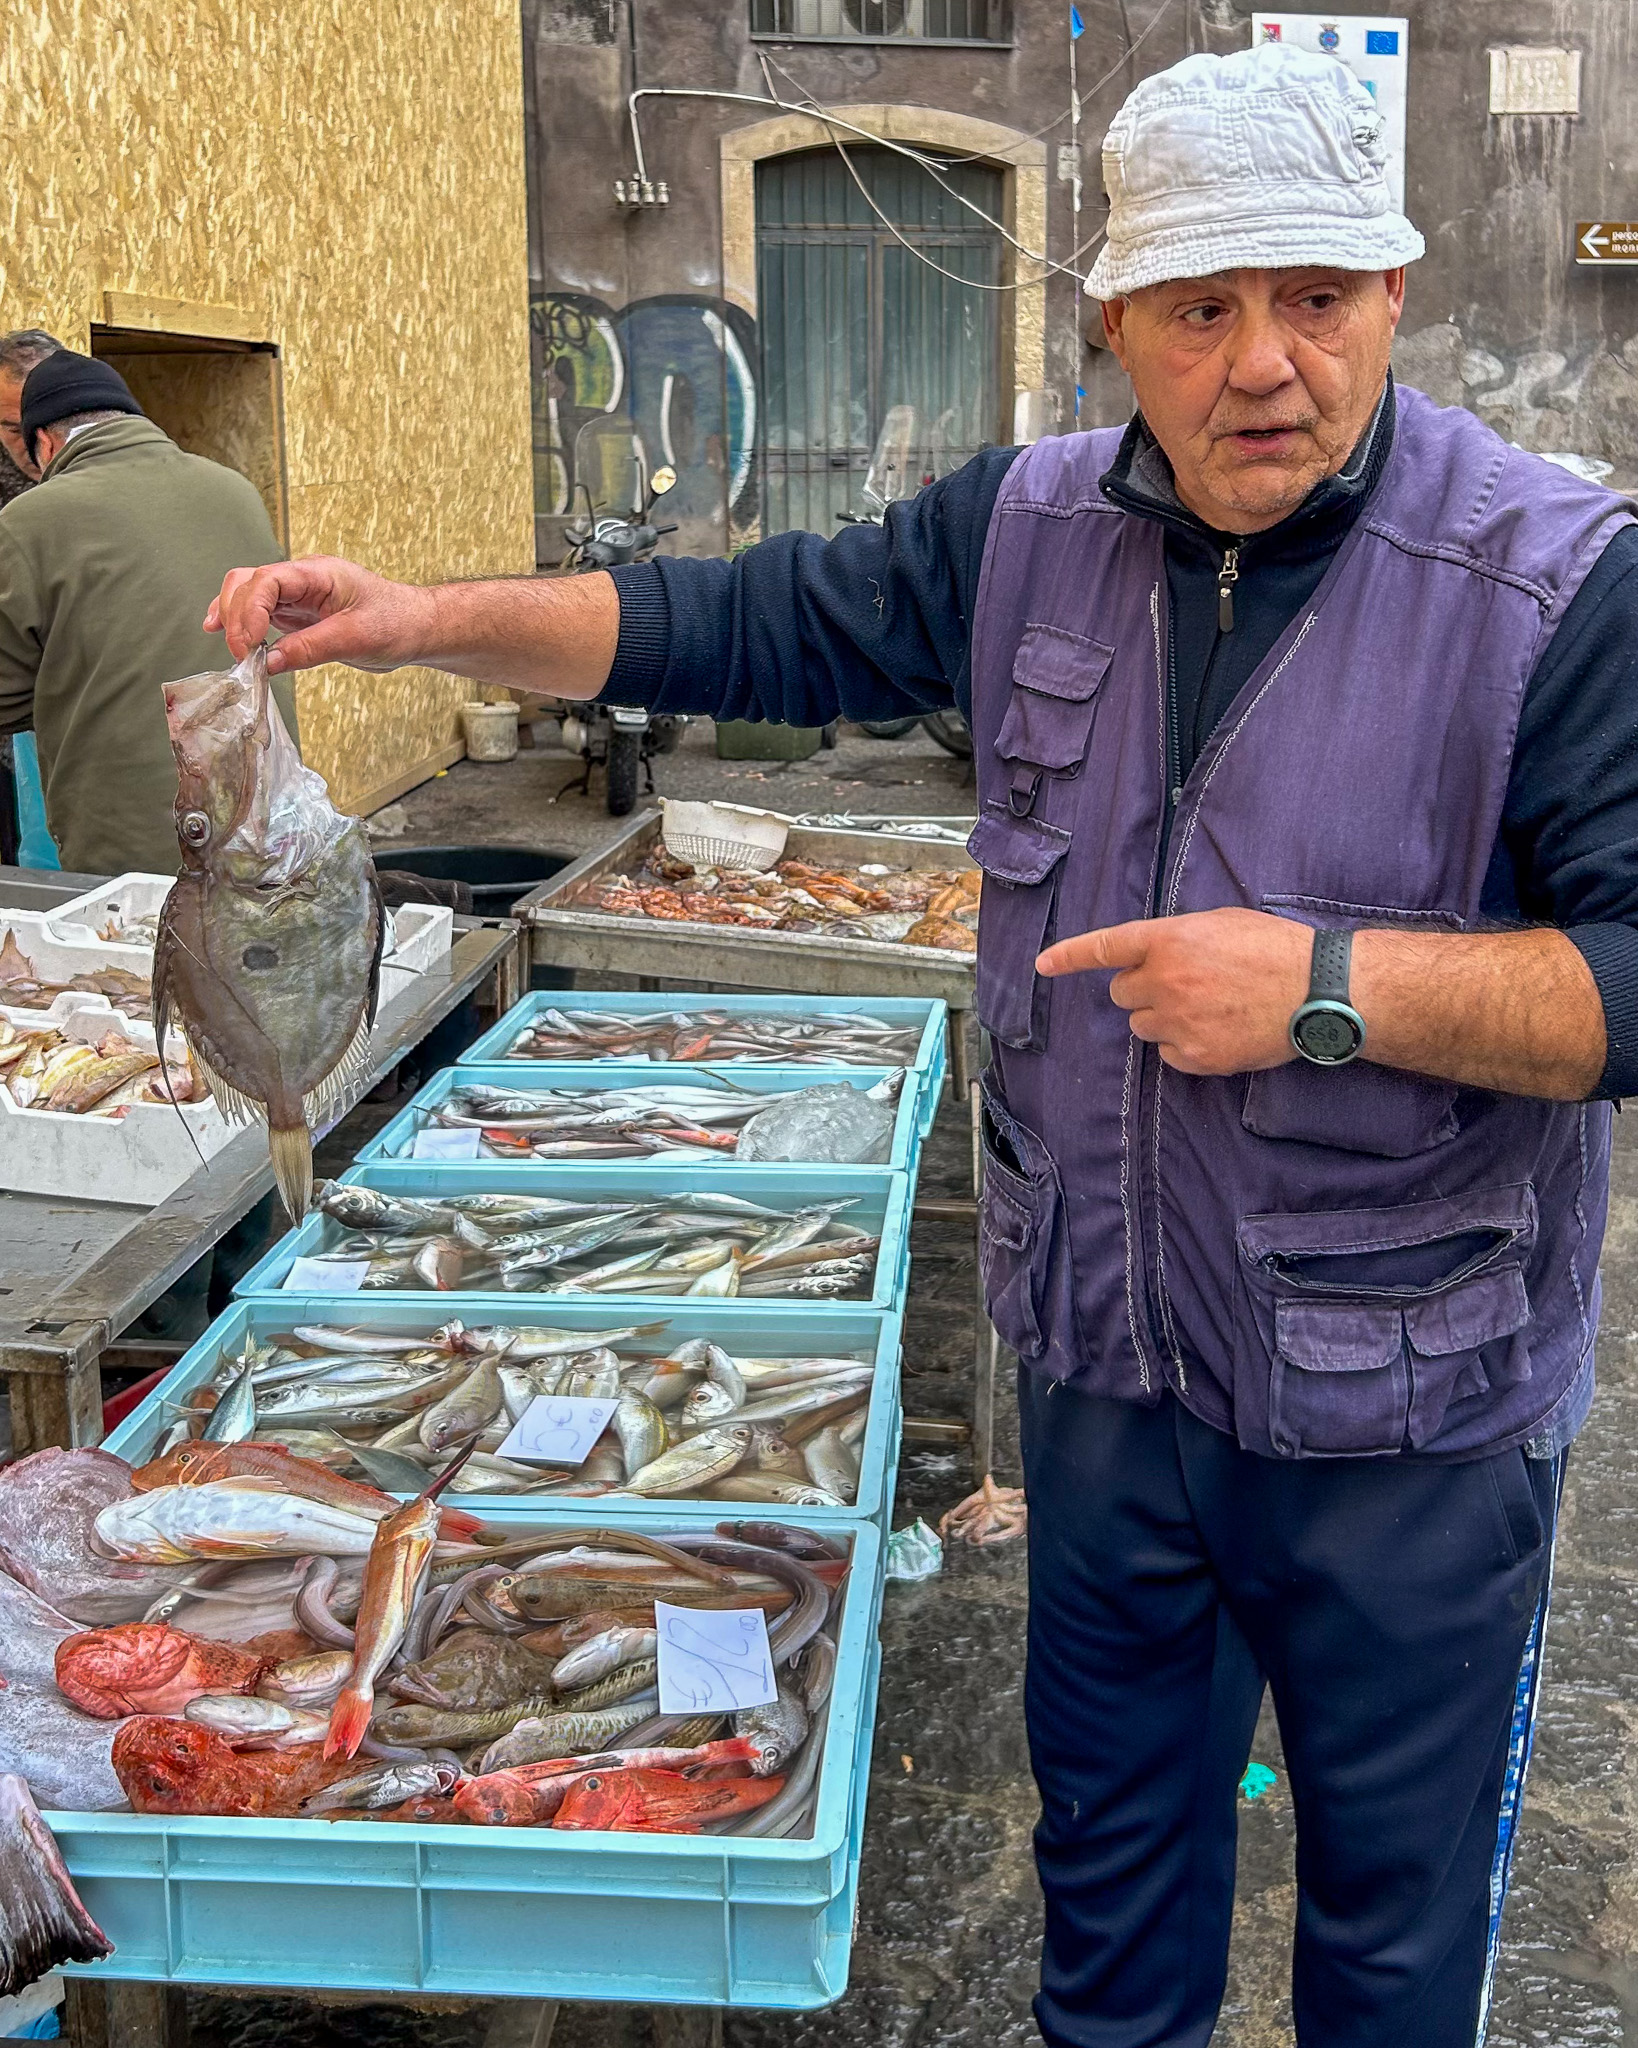 A fishmonger at La Pescheria, the fish market in Catania